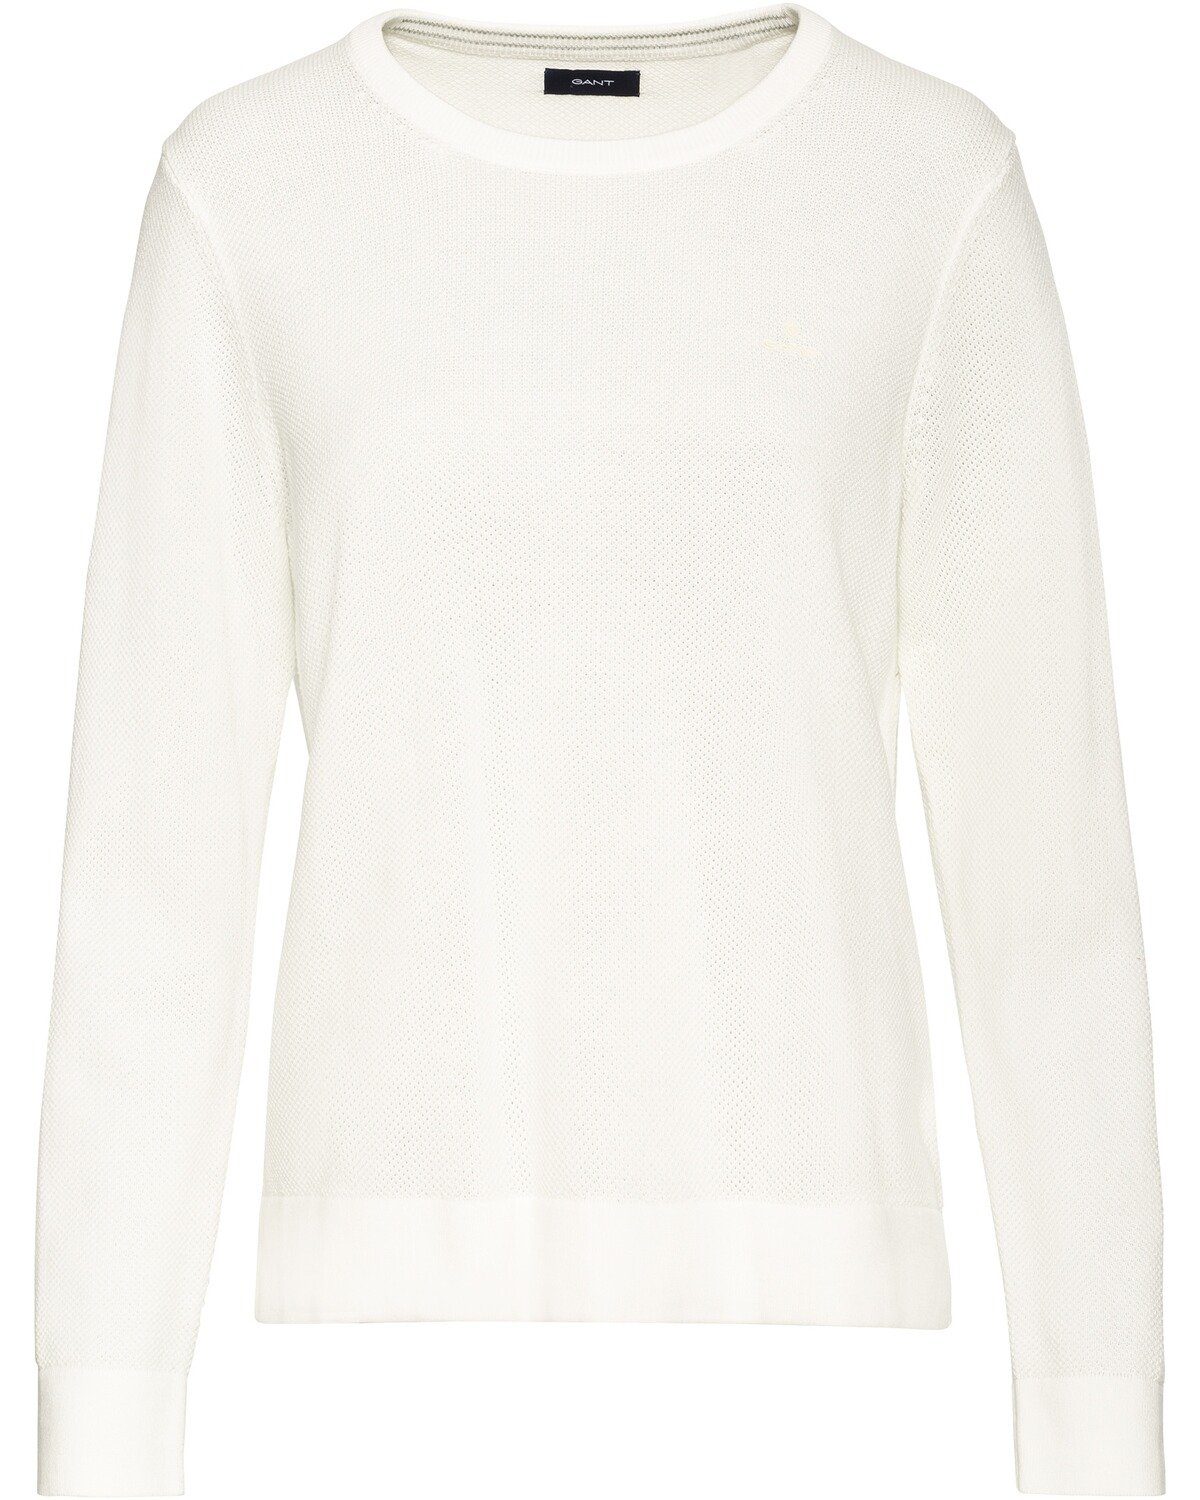 Gant Pullover online kaufen | OTTO